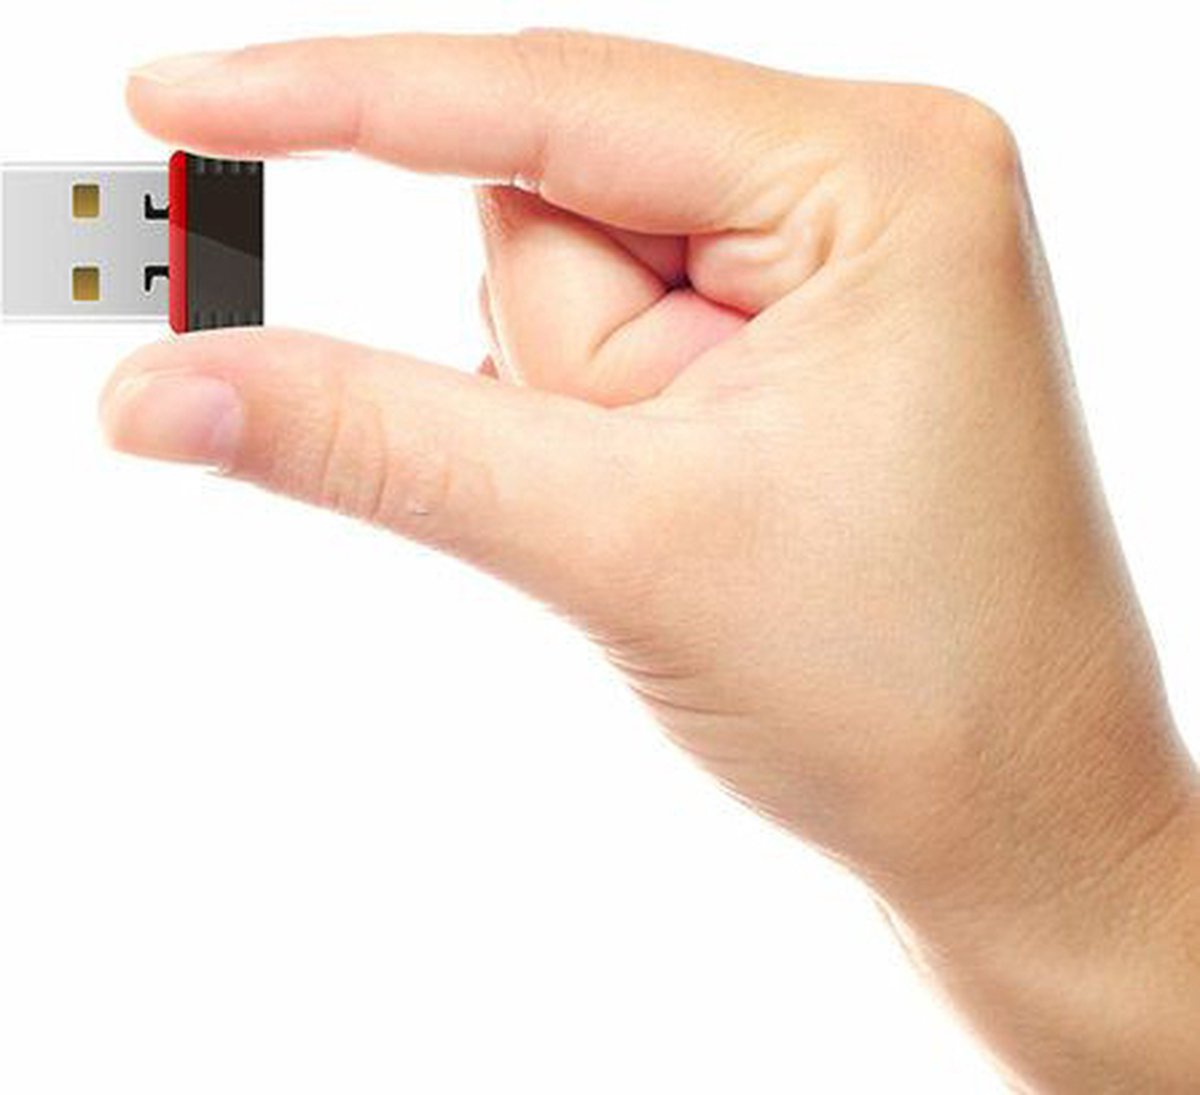 Adaptateur Hozard®, clé USB sans fil WLAN 1200 Mbps double bande 2.4G/5G USB  3.0 clé